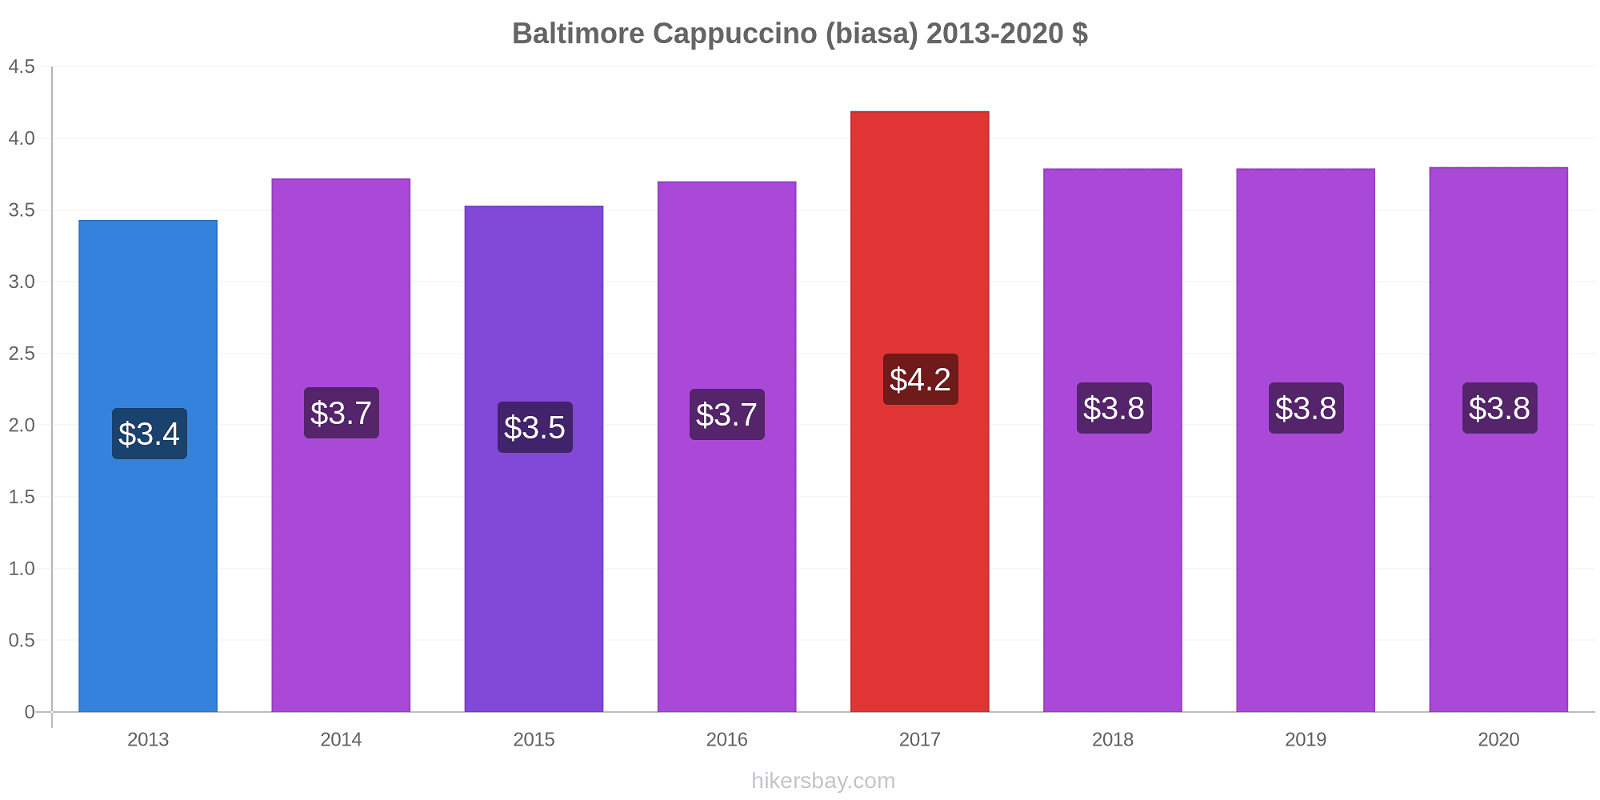 Baltimore perubahan harga Cappuccino (biasa) hikersbay.com